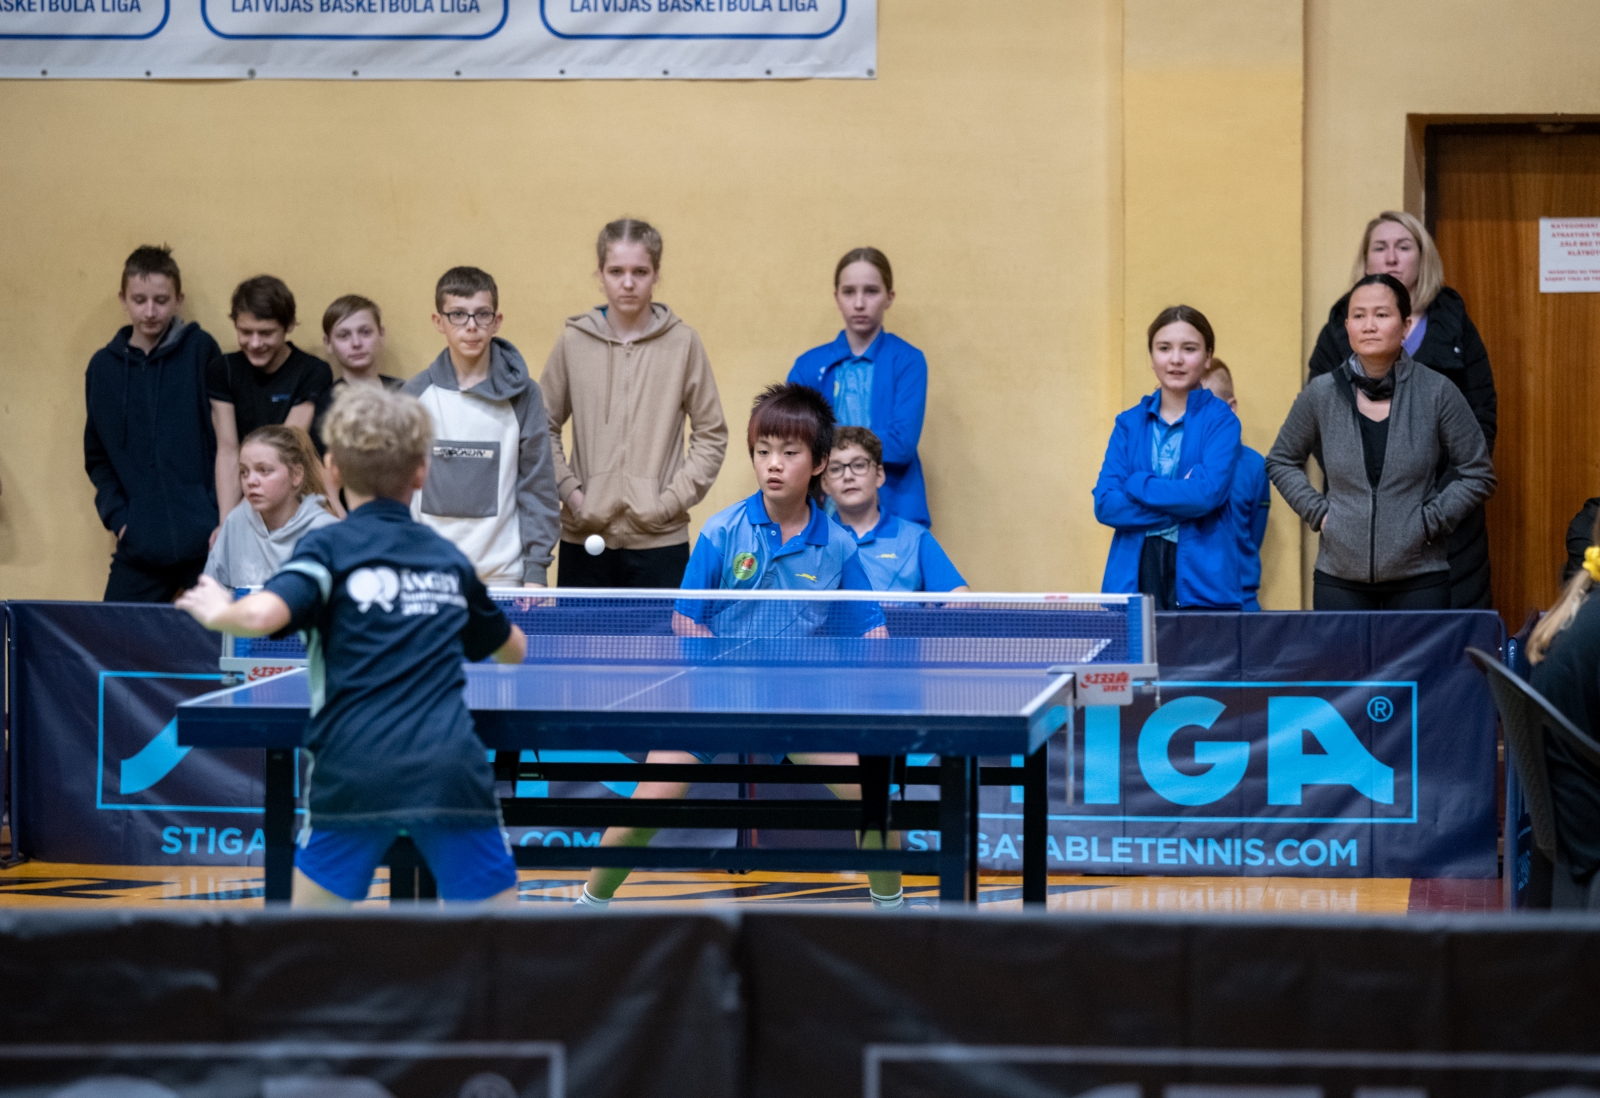 STIGA kausa izcīņas sacensības galda tenisā bērniem un jauniešiem IV posms (31)